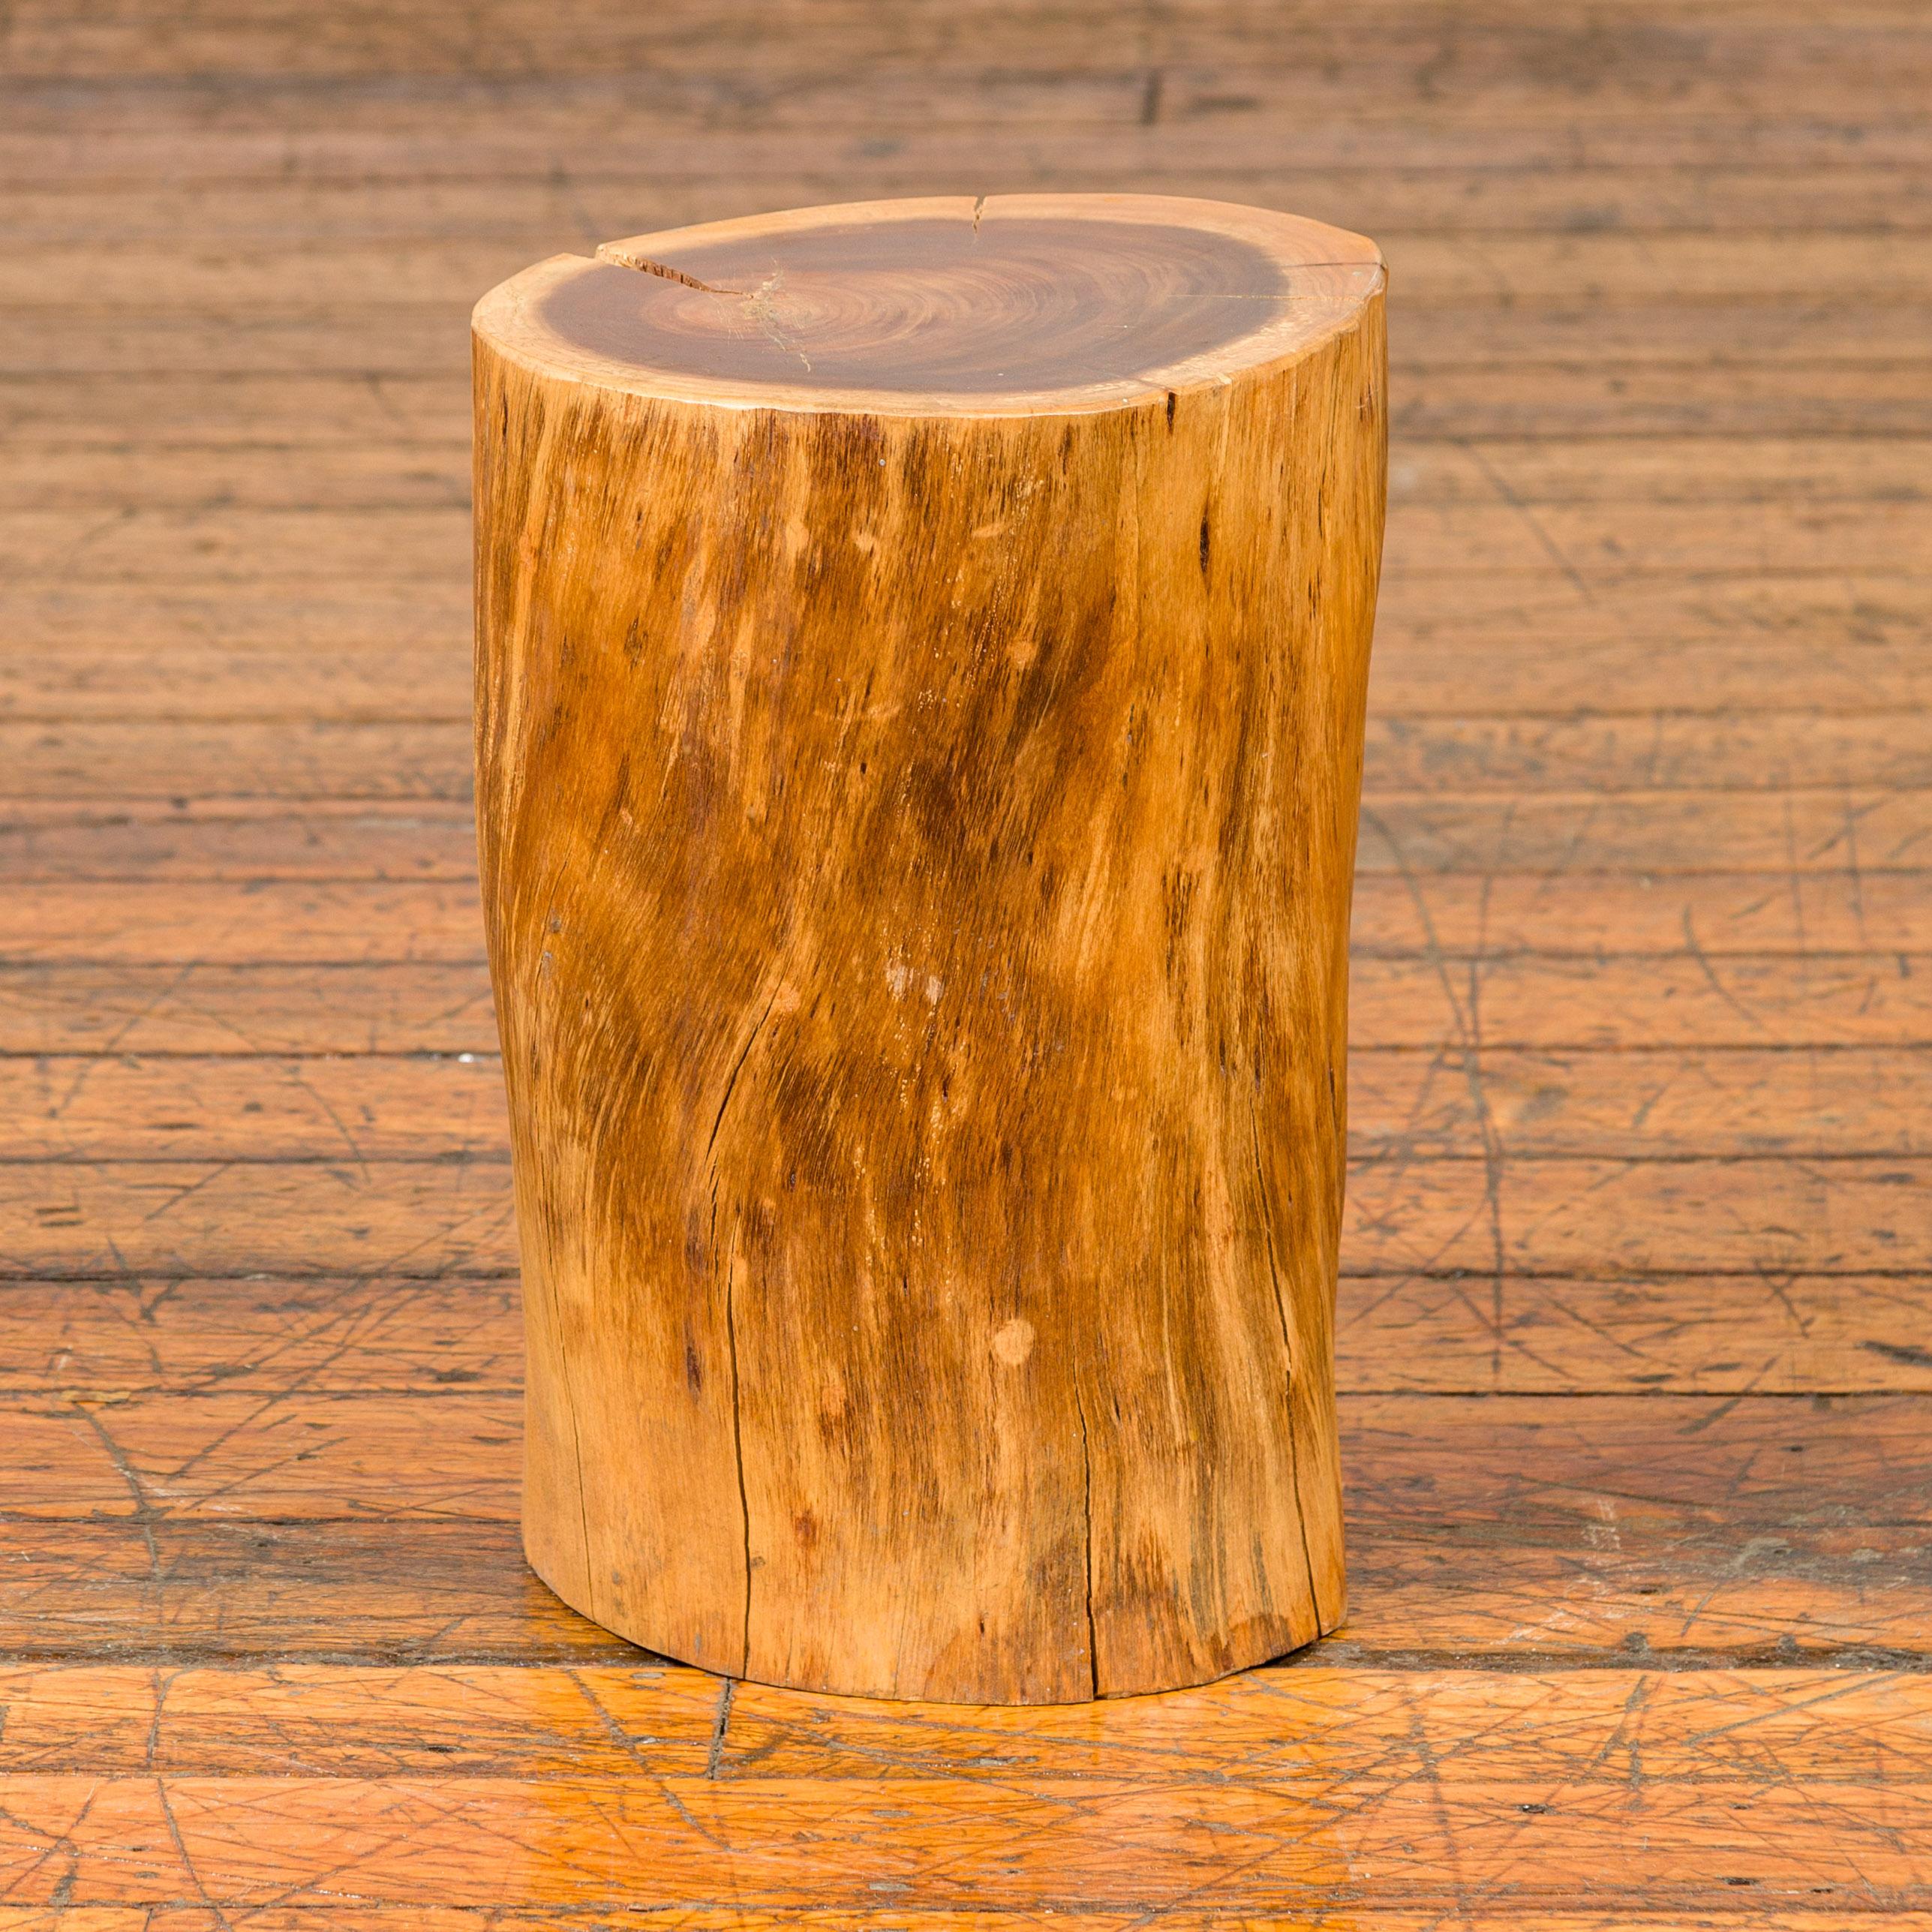 Une souche d'arbre vintage rustique thaïlandaise qui peut être utilisée comme tabouret, piédestal ou table à boissons. Cette souche d'arbre thaïlandaise vintage offre un charme rustique authentique à la fois fonctionnel et décoratif. Fabriquée à